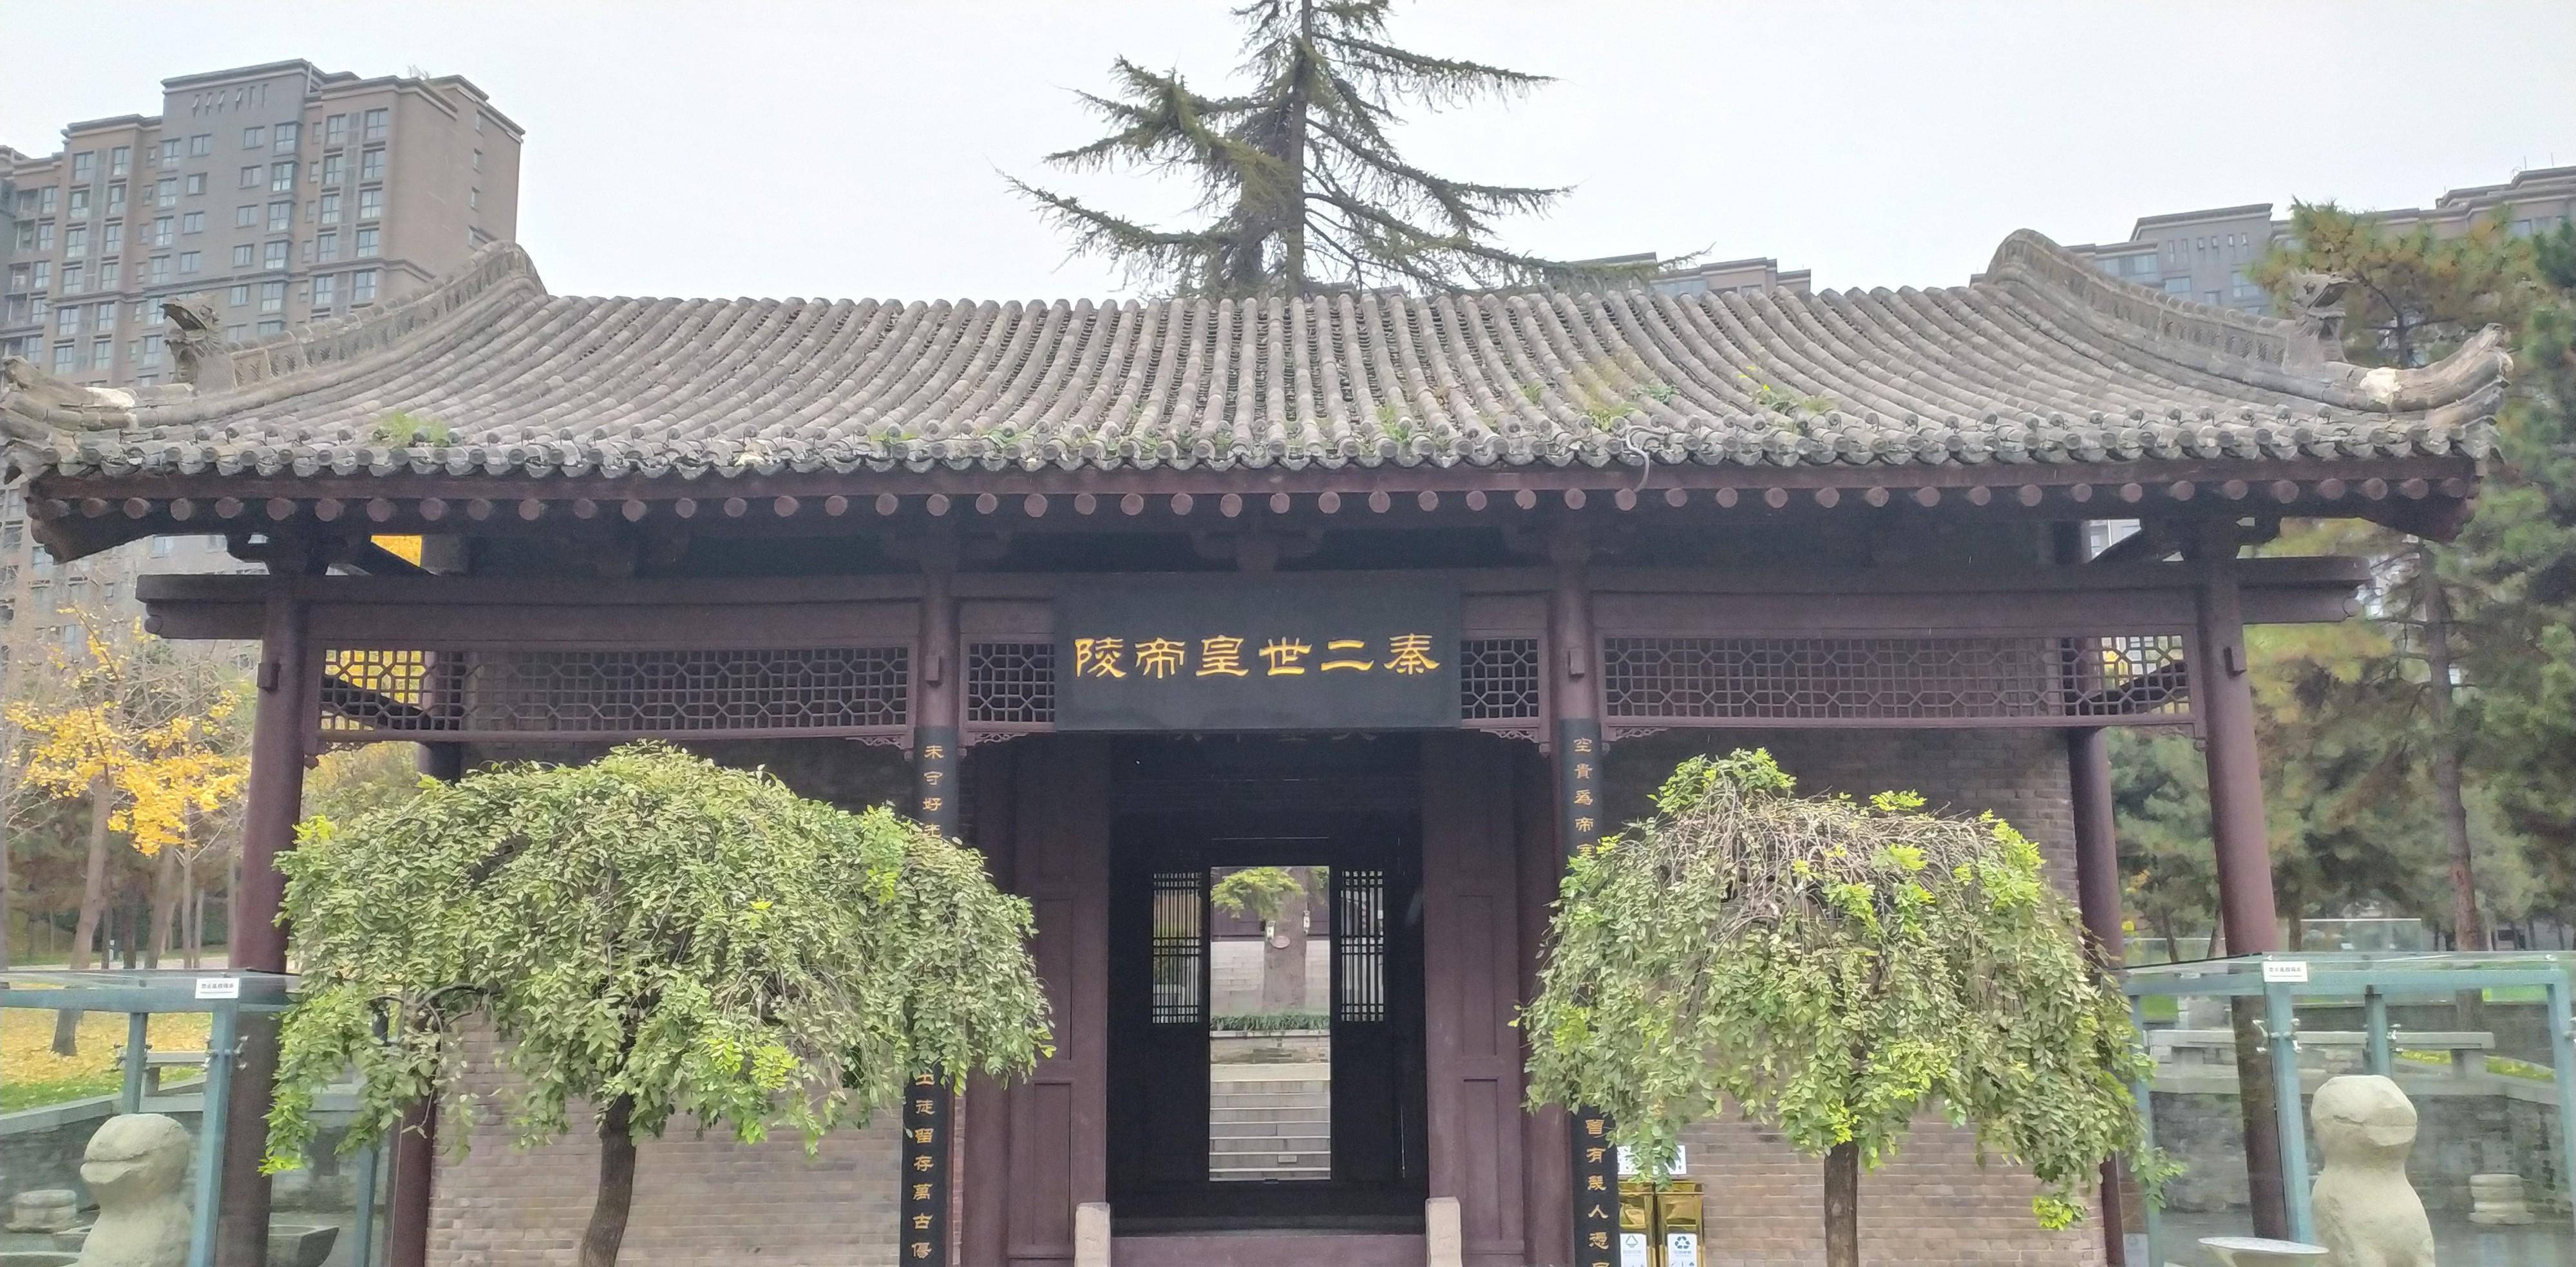 秦二世胡亥之墓,位于西安曲江新区,周围已经是高楼大厦